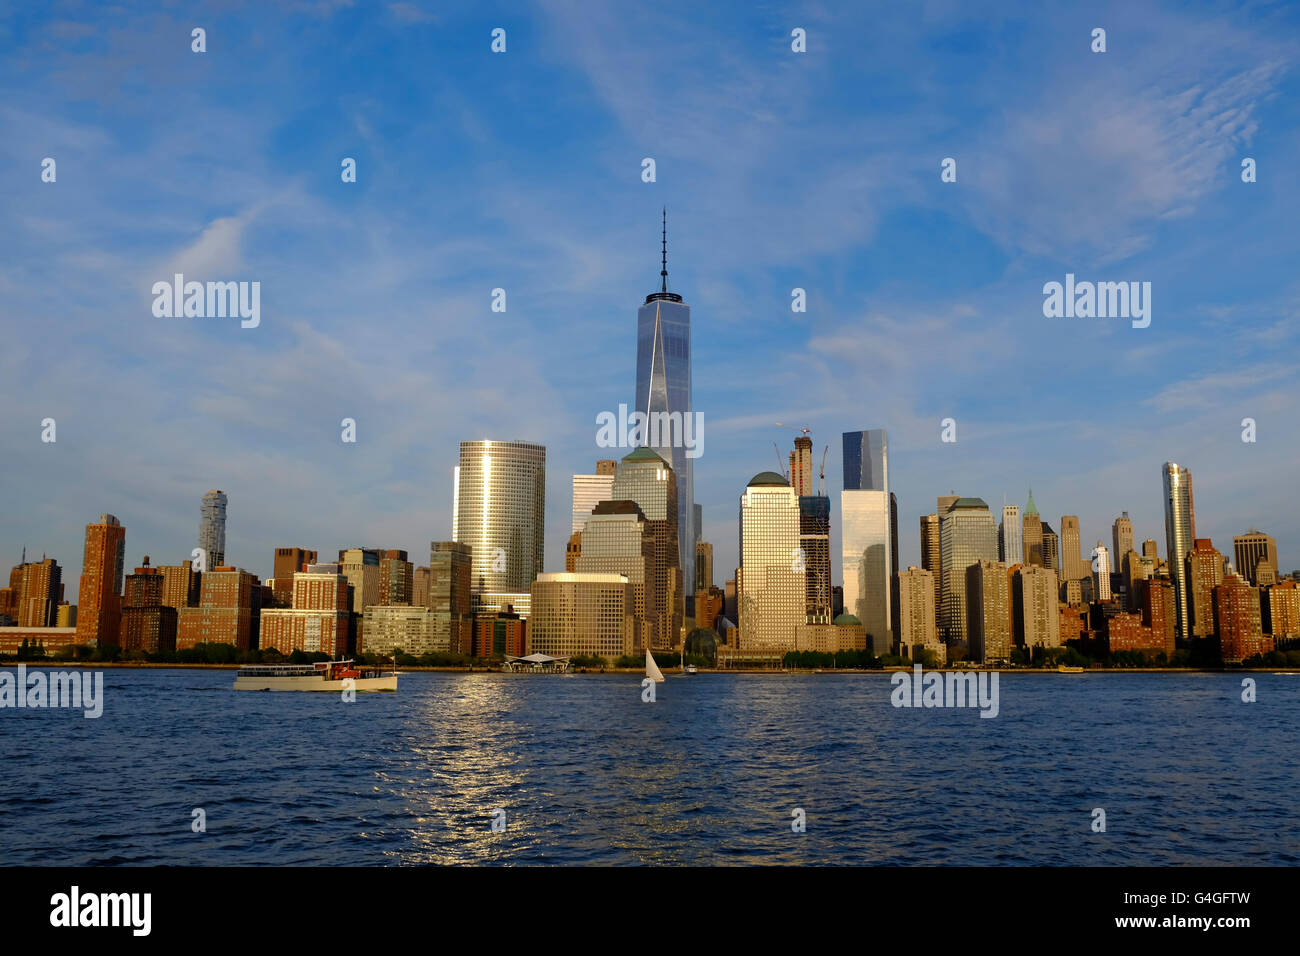 Lo skyline del centro cittadino inferiore di Manhattan, New York City, con quello nuovo World Trade Center dall'architetto David Childs. Foto Stock